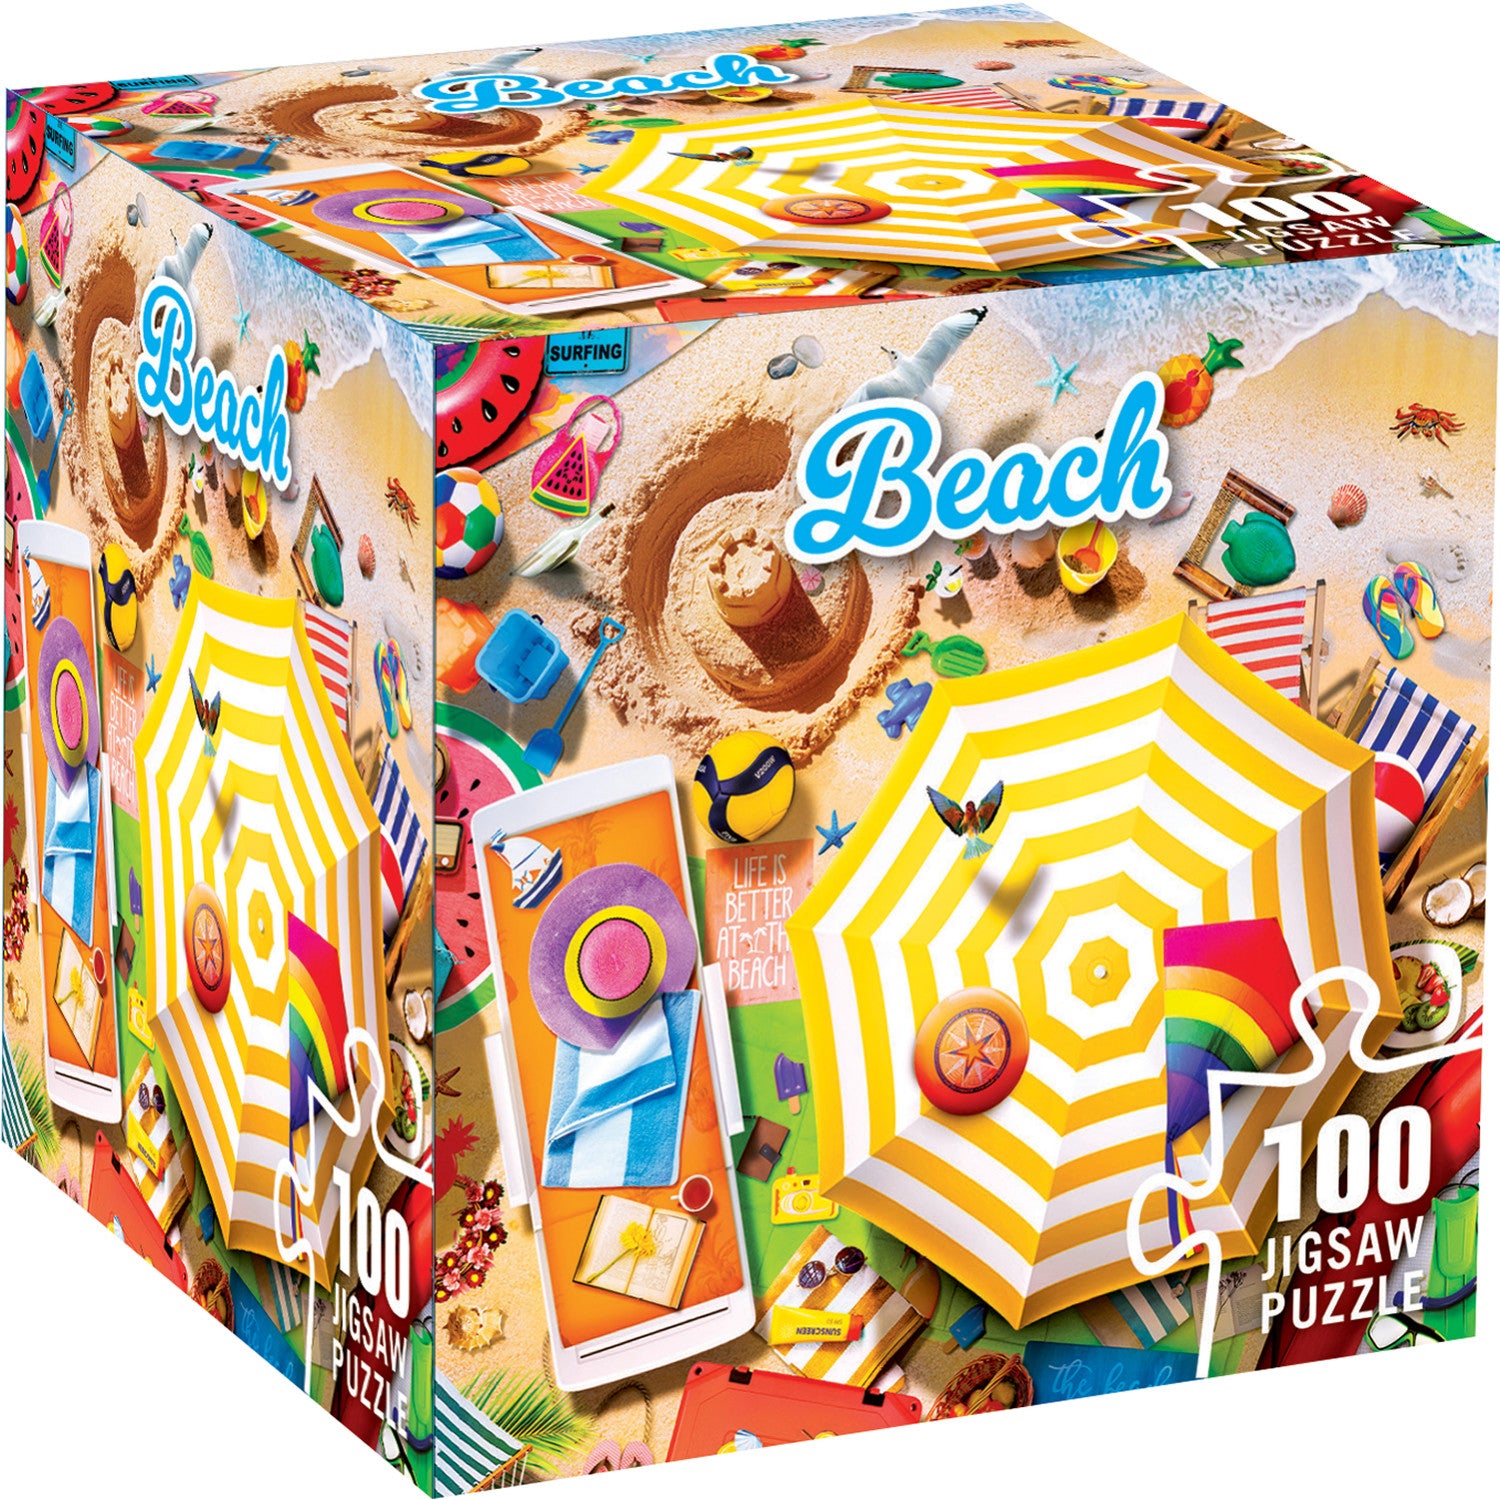 Beach 100 Piece Jigsaw Puzzle